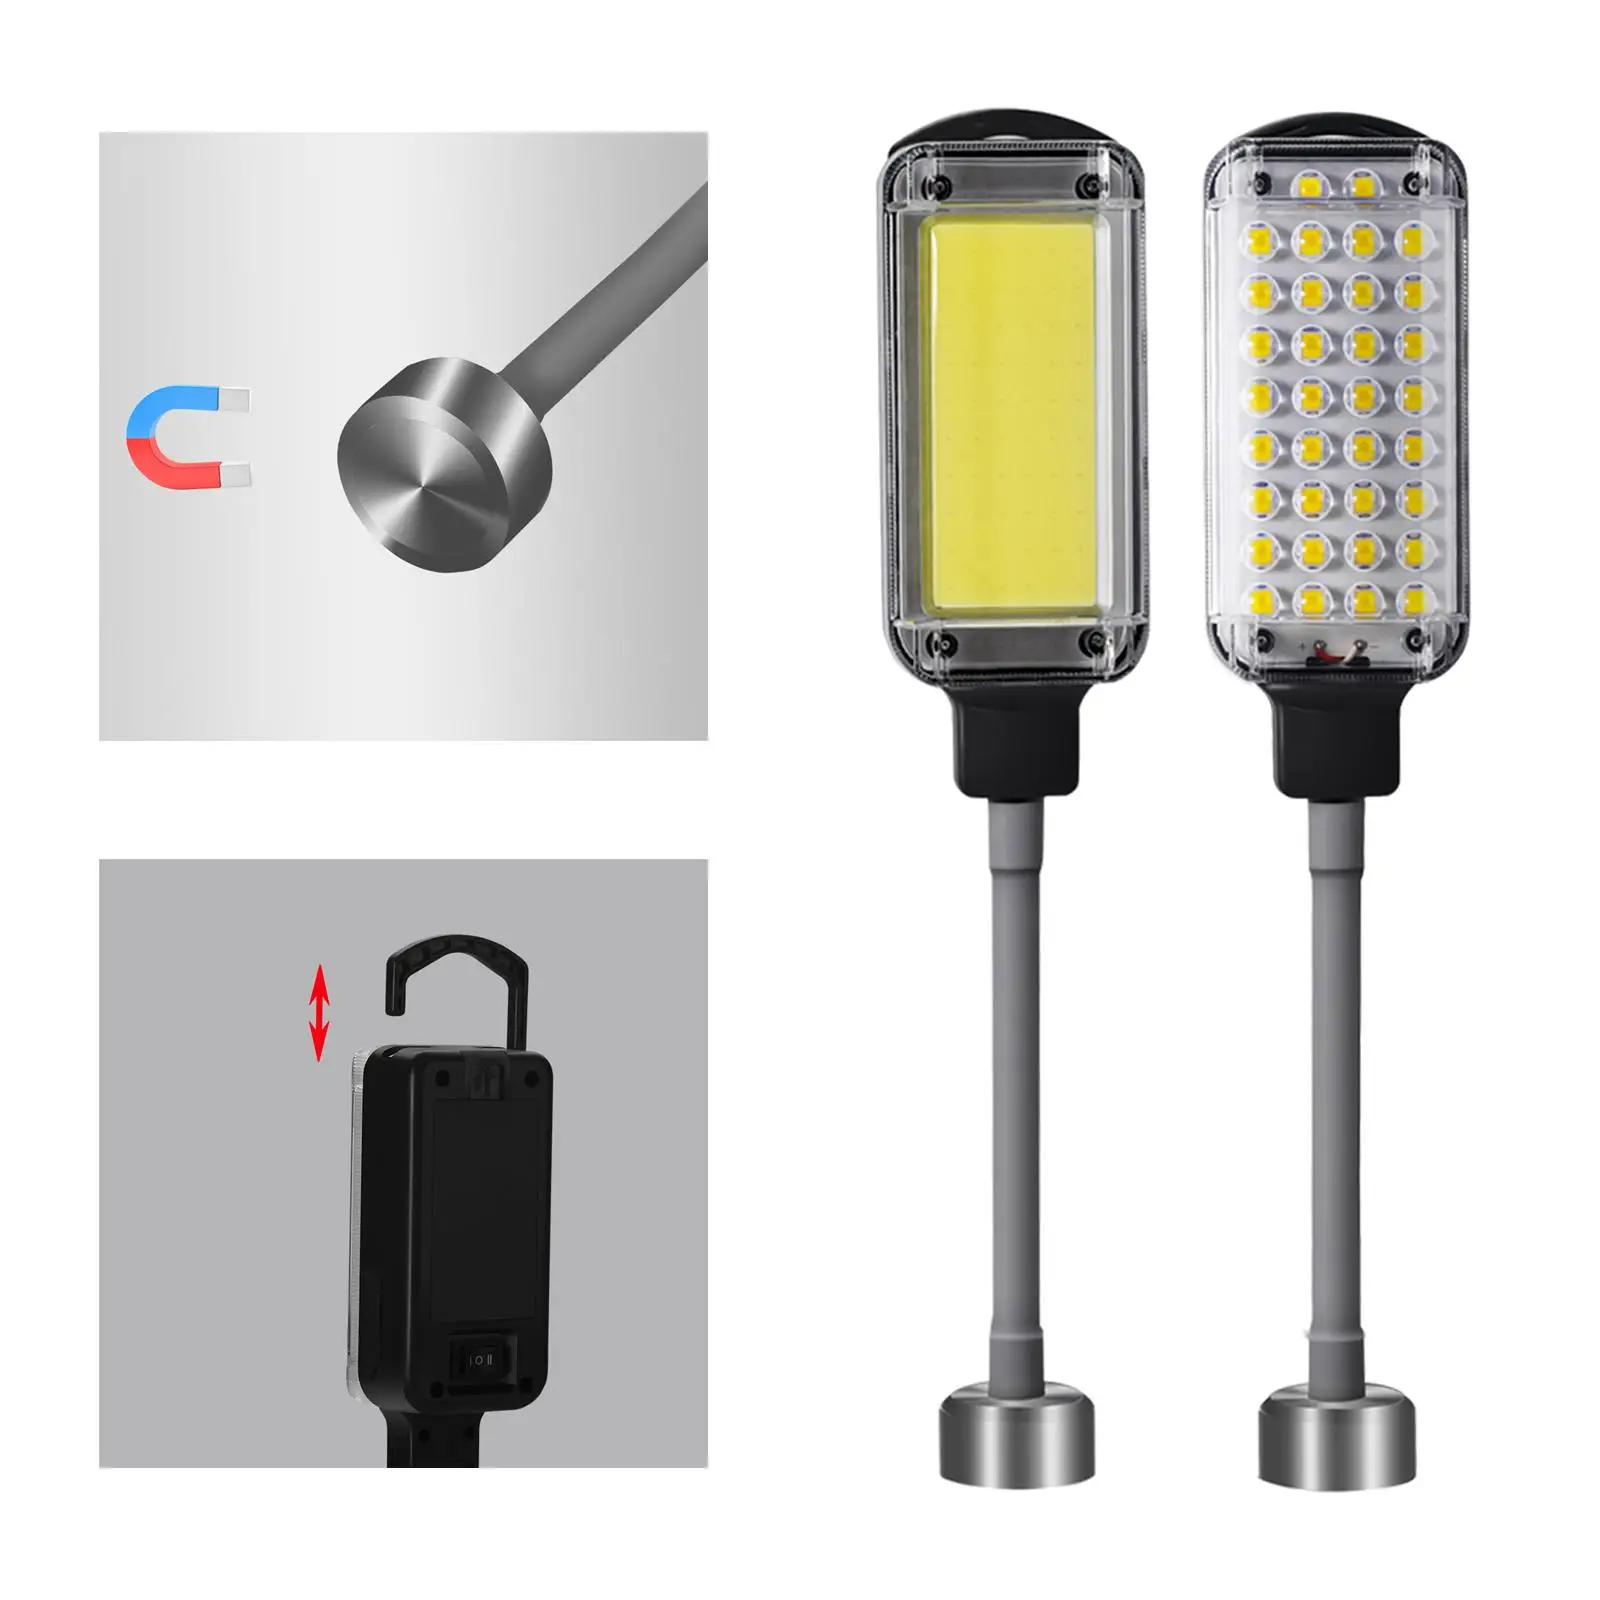 LED Work Light, Rechargeable Work Light, Portable Magnetic LED Work Light,